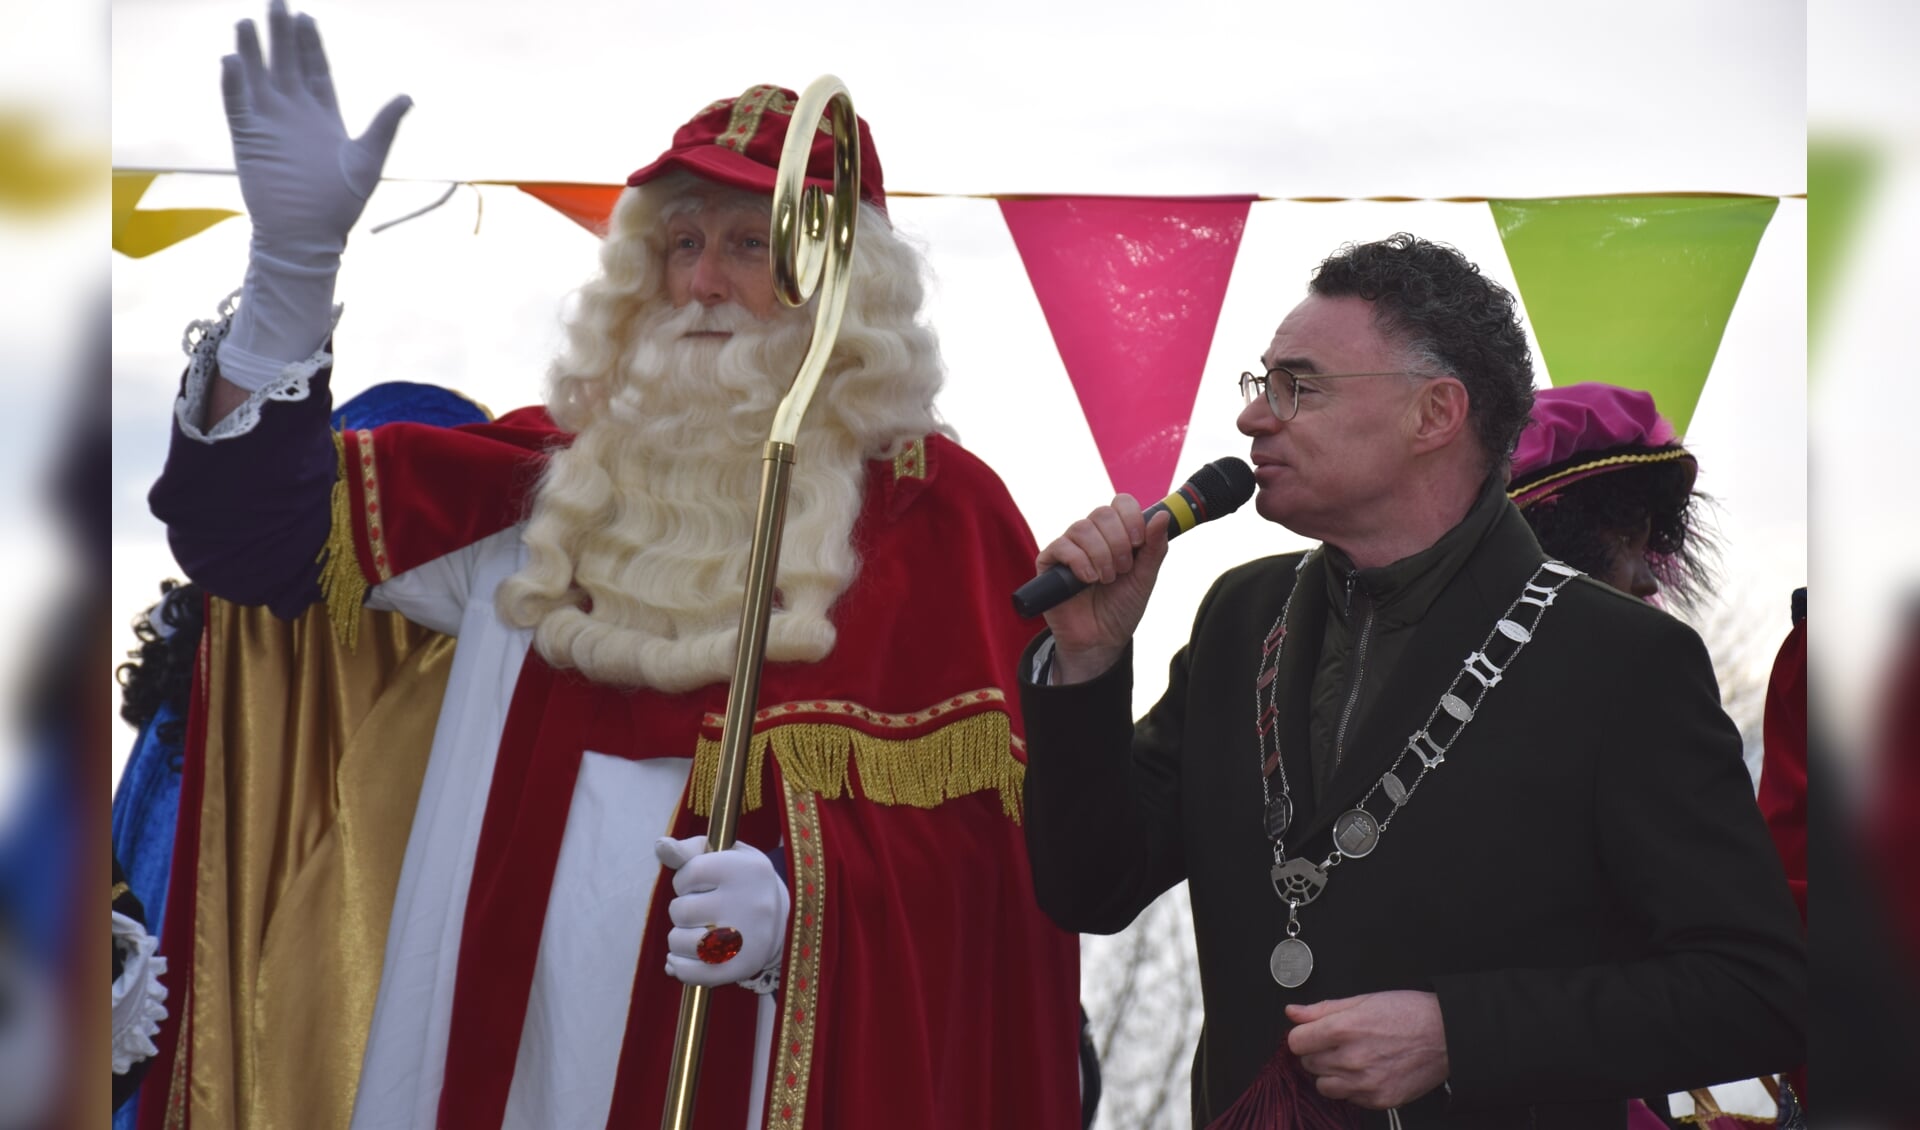 Burgemeester Isabella ontvangt de mijterloze Sinterklaas in 2019